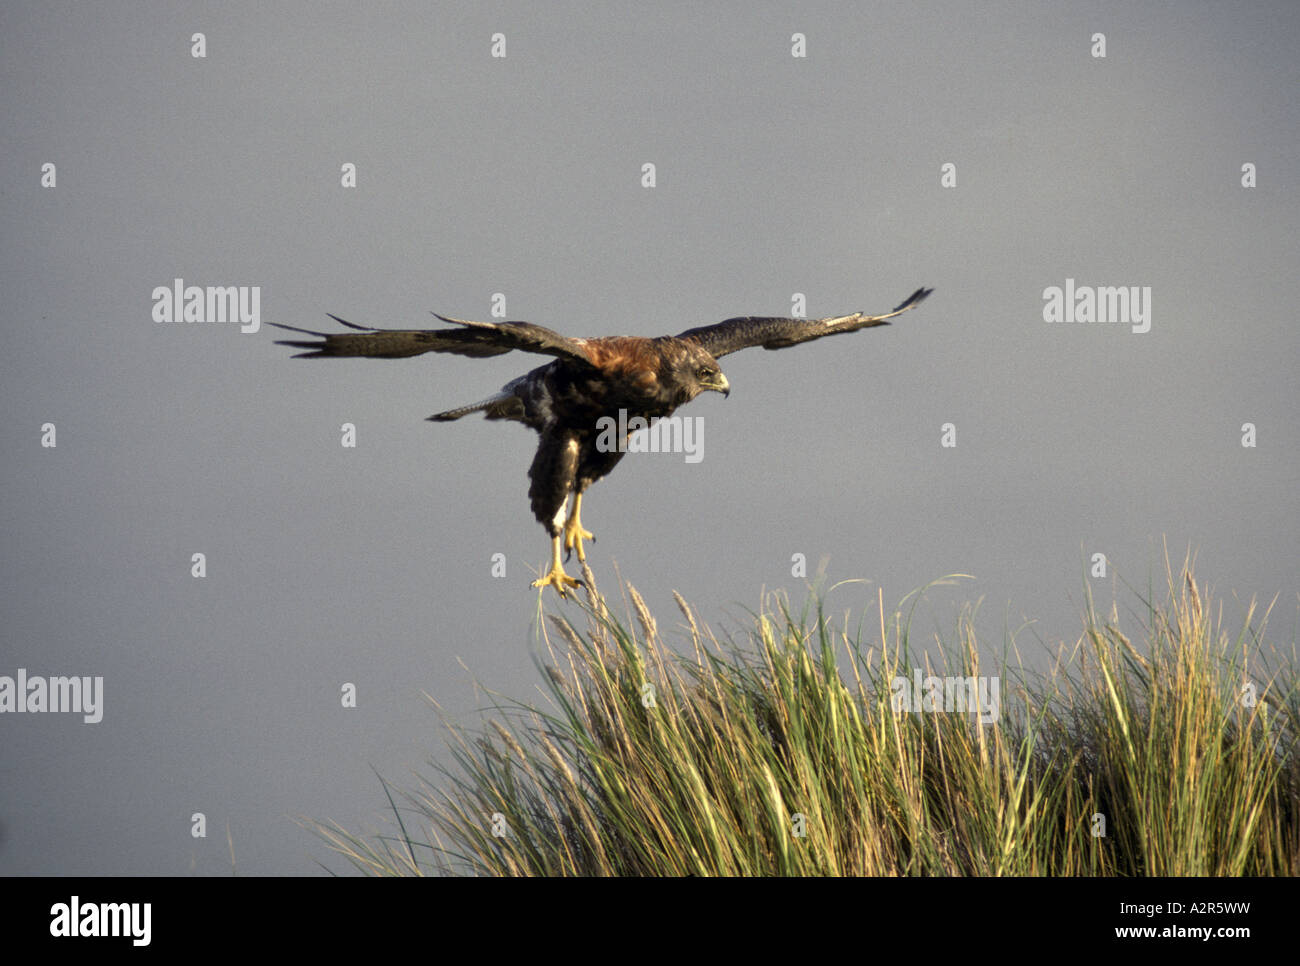 Redbacked Hawk Buteo polyosoma en vuelo rondando sobre hierba Foto de stock